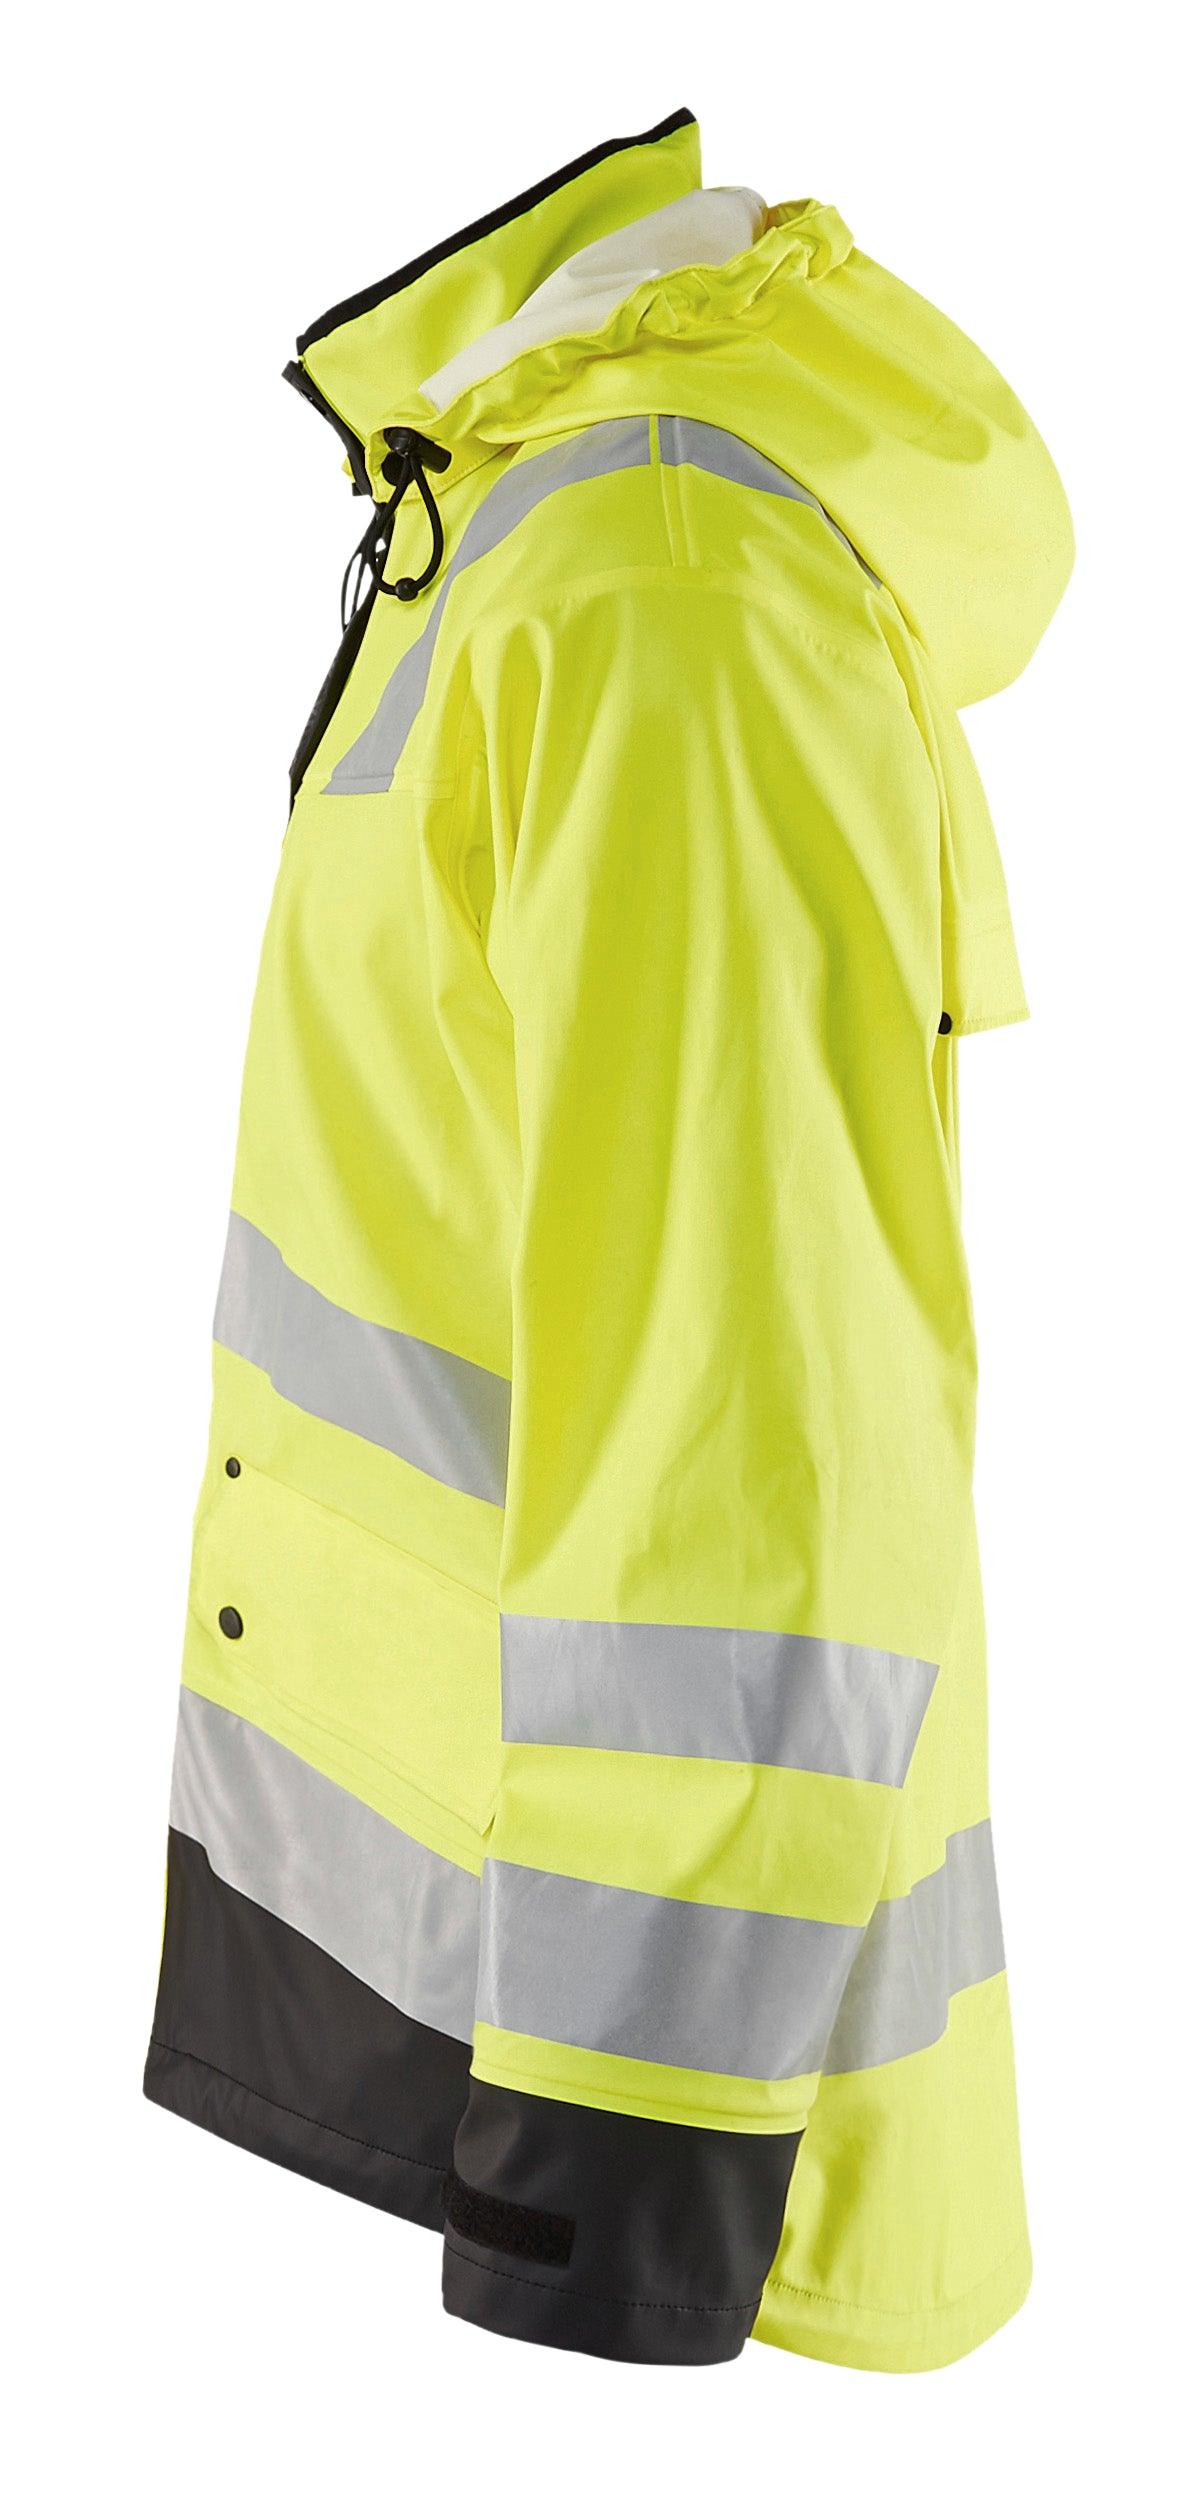 Blaklader 4312 Hi-Vis Waterproof Rain Jacket - Yellow Hi-Vis/Black - Trusted Gear Company LLC